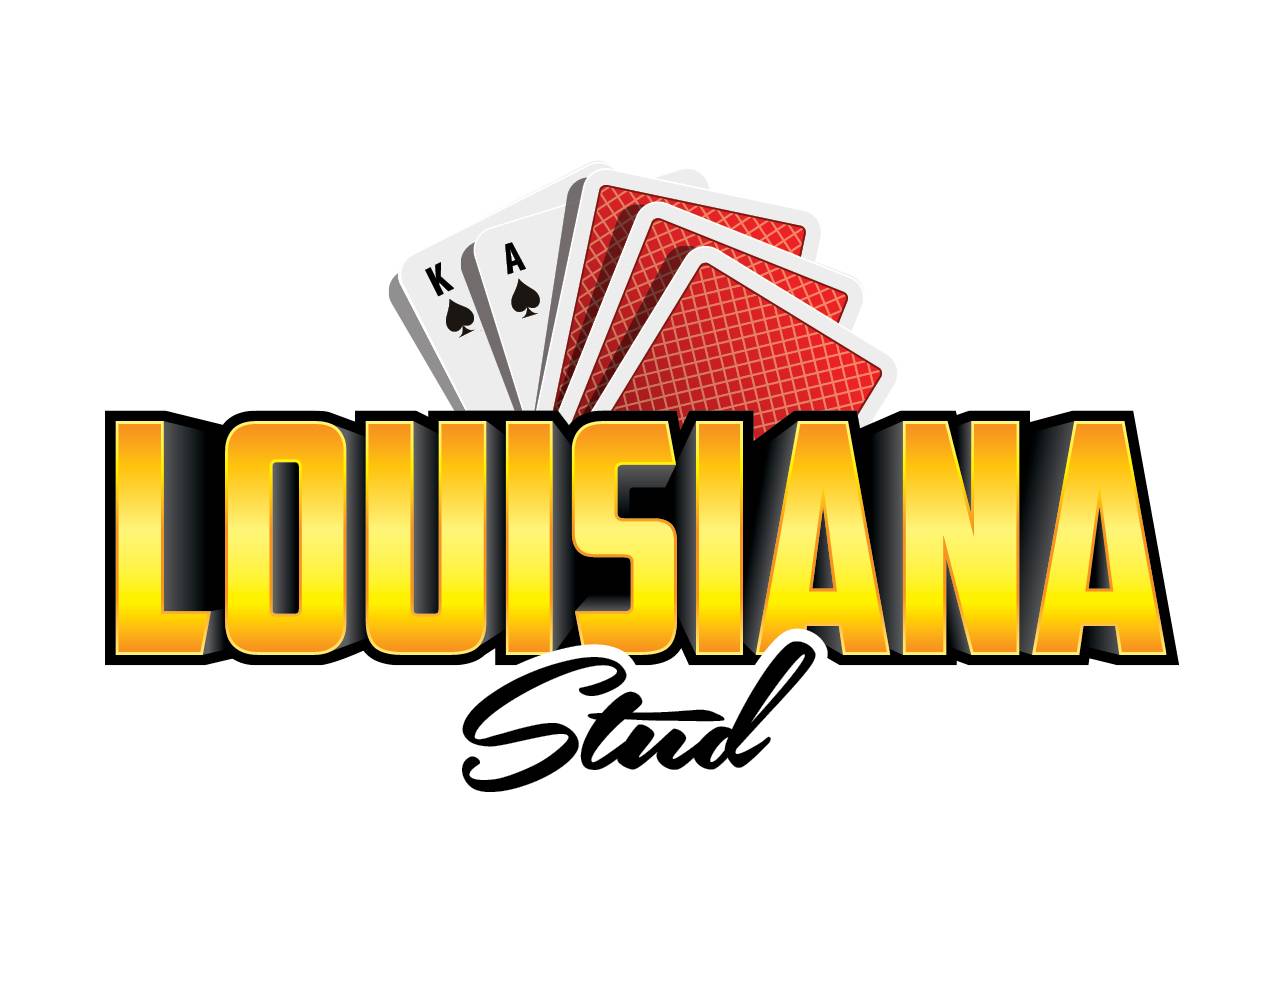 Louisiana Stud